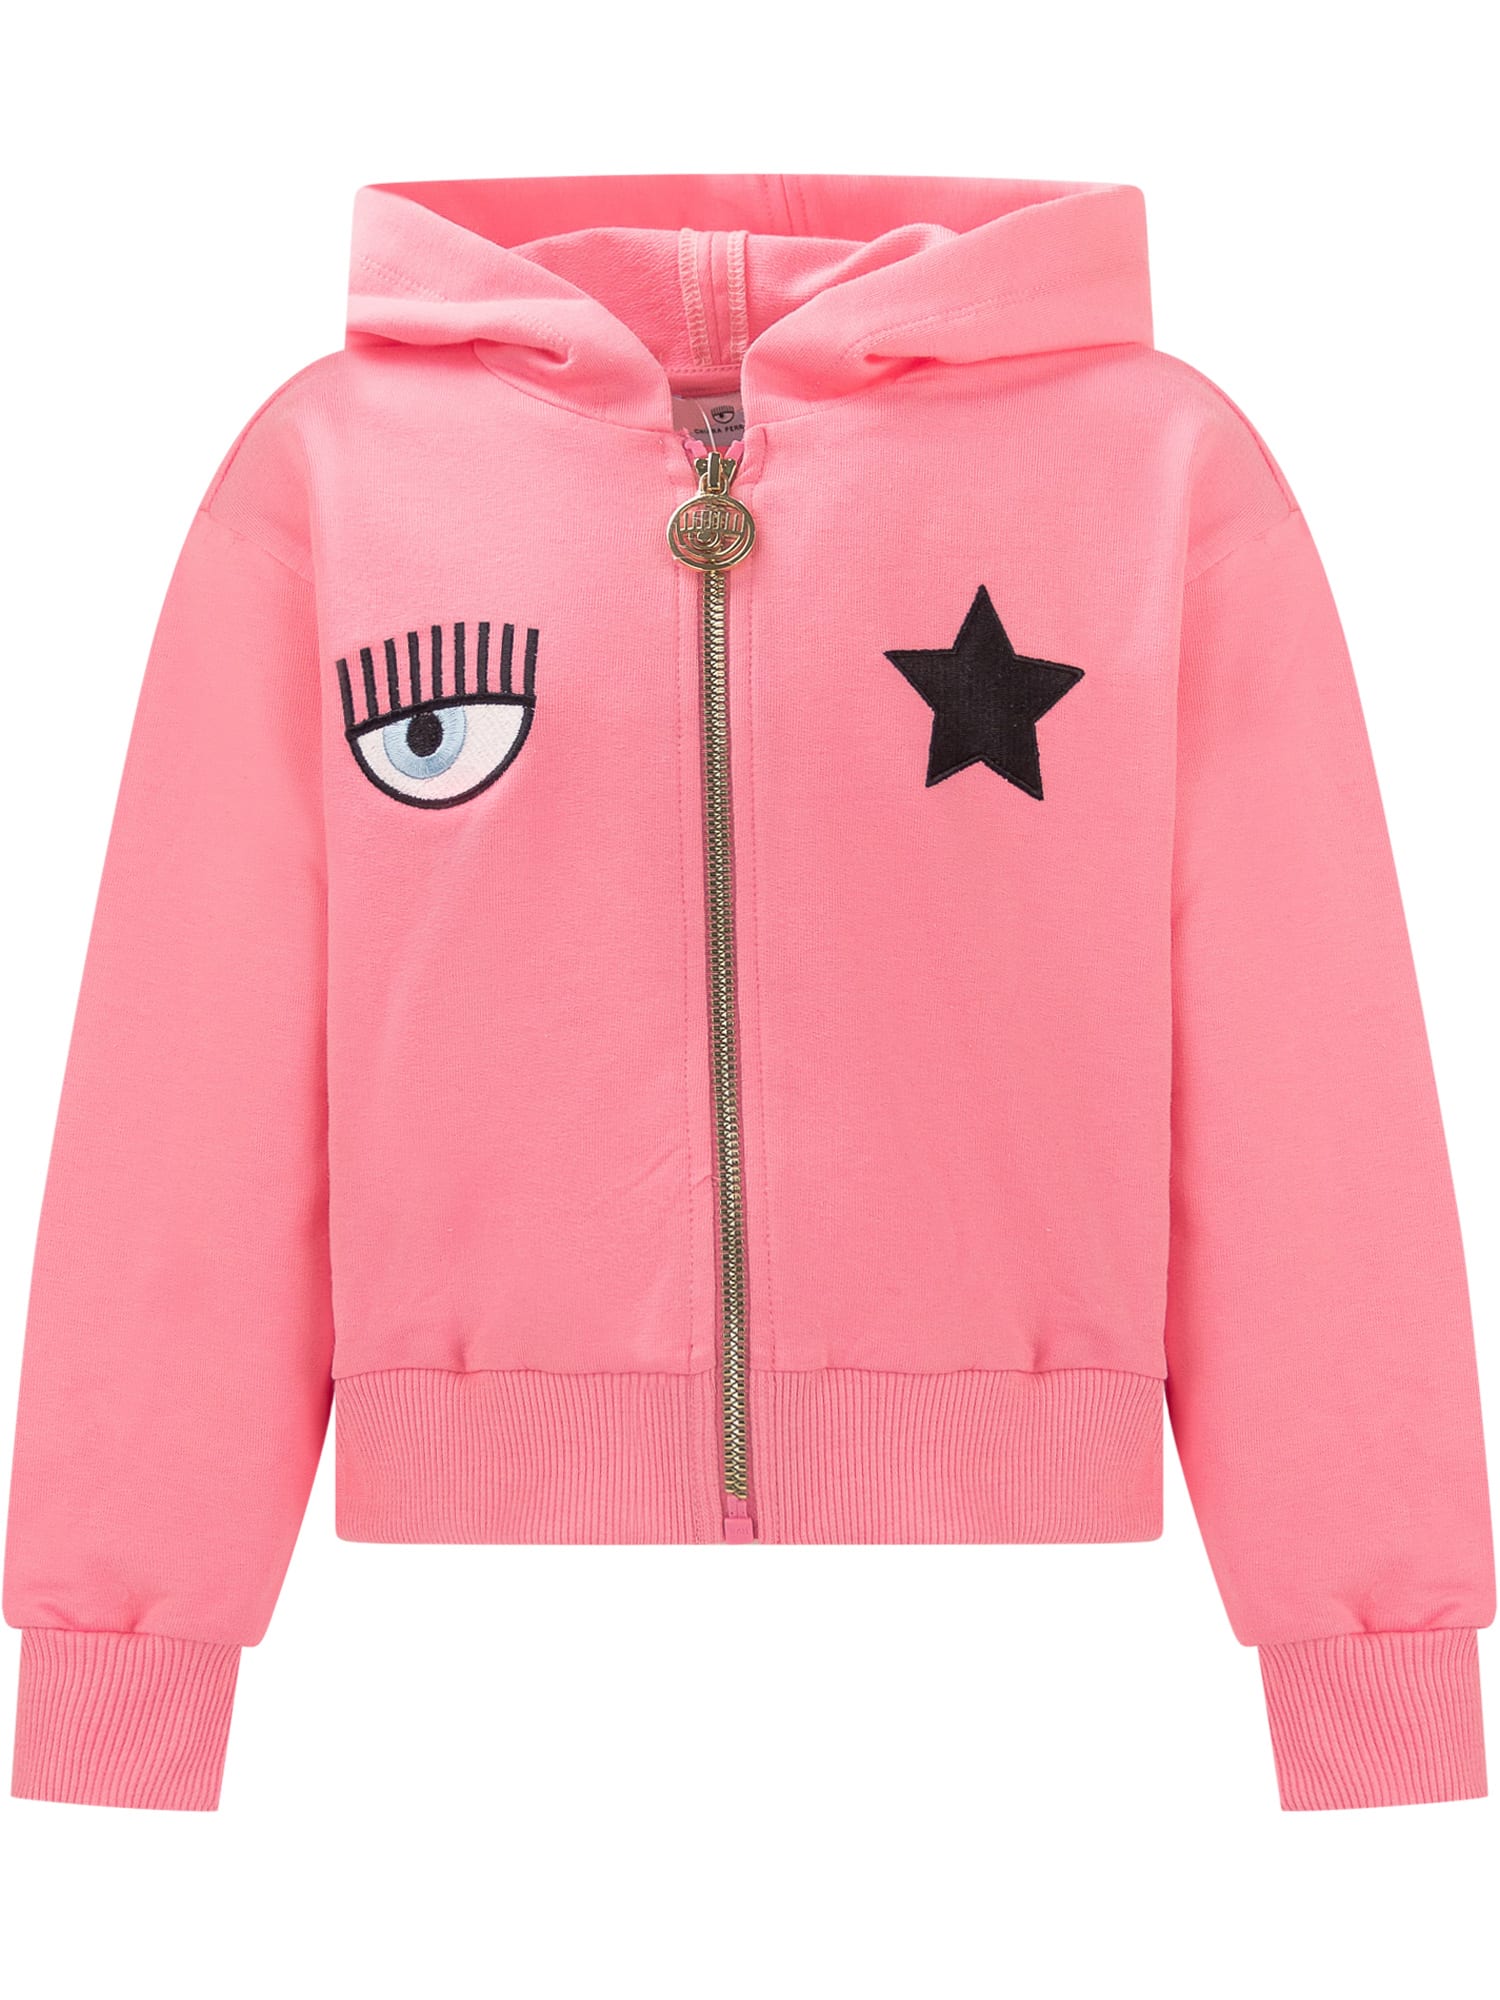 Chiara Ferragni Kids' Hooded Sweatshirt With Zip In Rosa